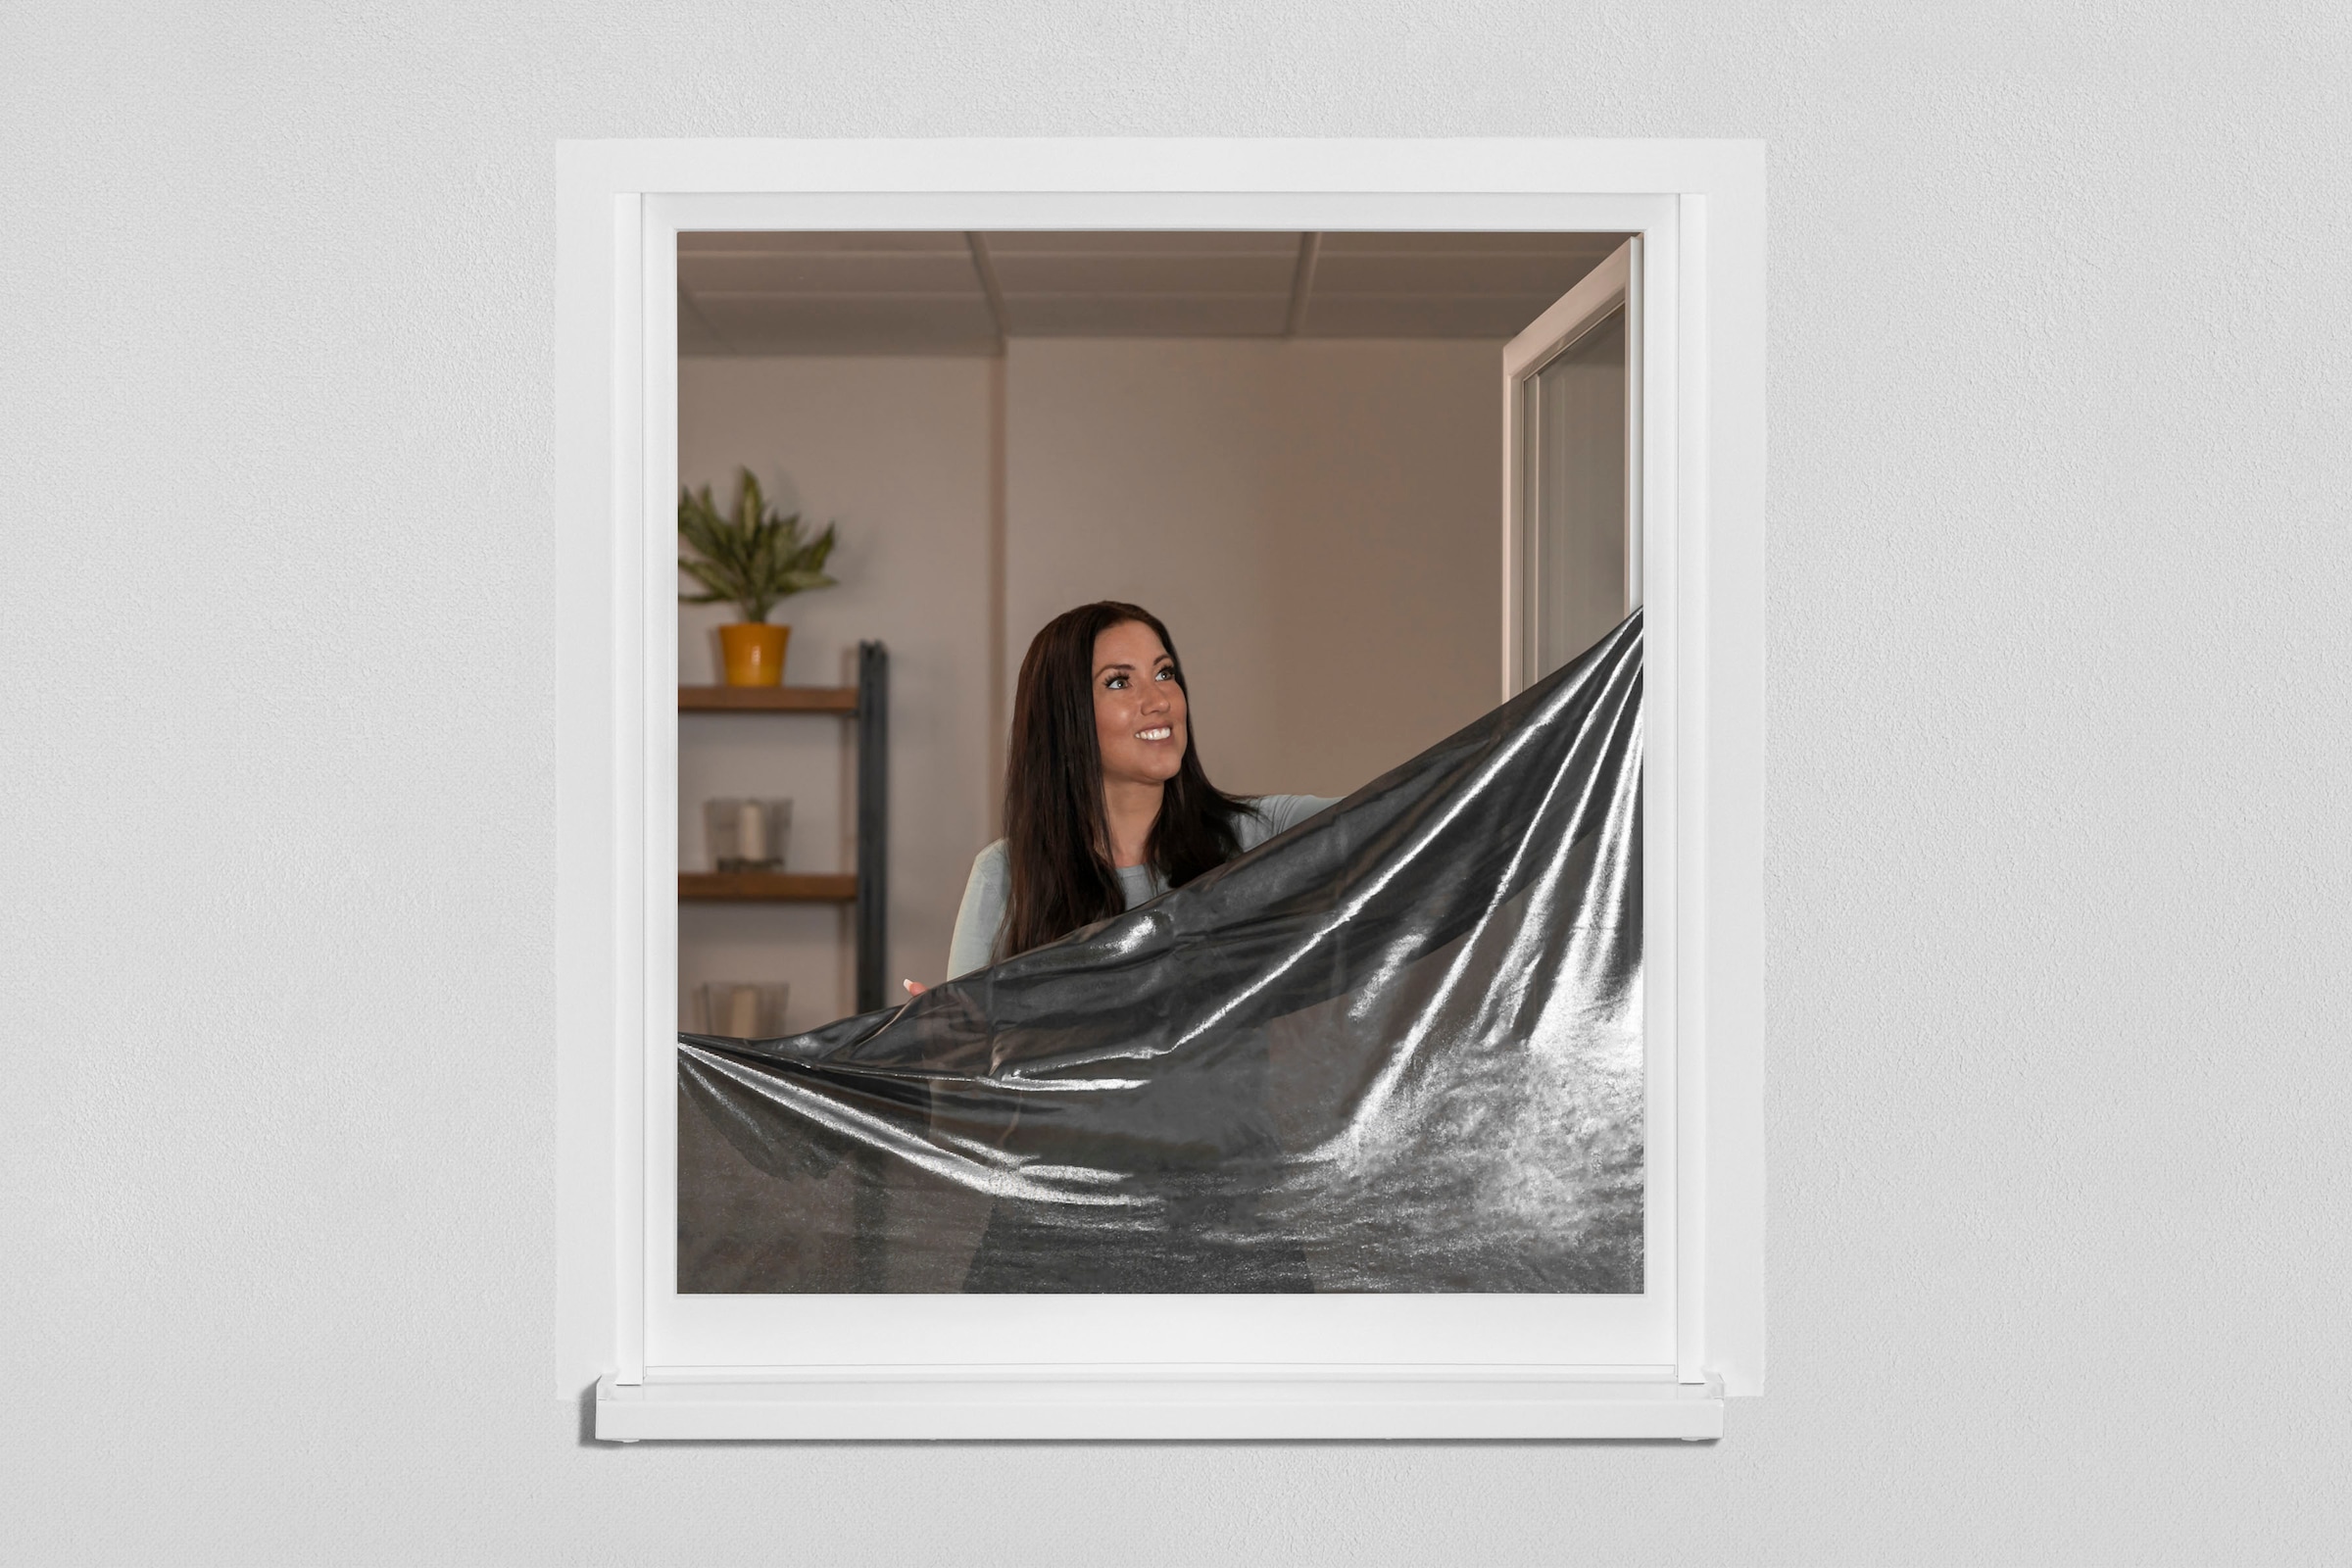 SCHELLENBERG Fliegengitter-Gewebe »Reflection 50720«, reflektierend, für Fenster, mit Sonnenschutz, 130x150 cm, anthrazit